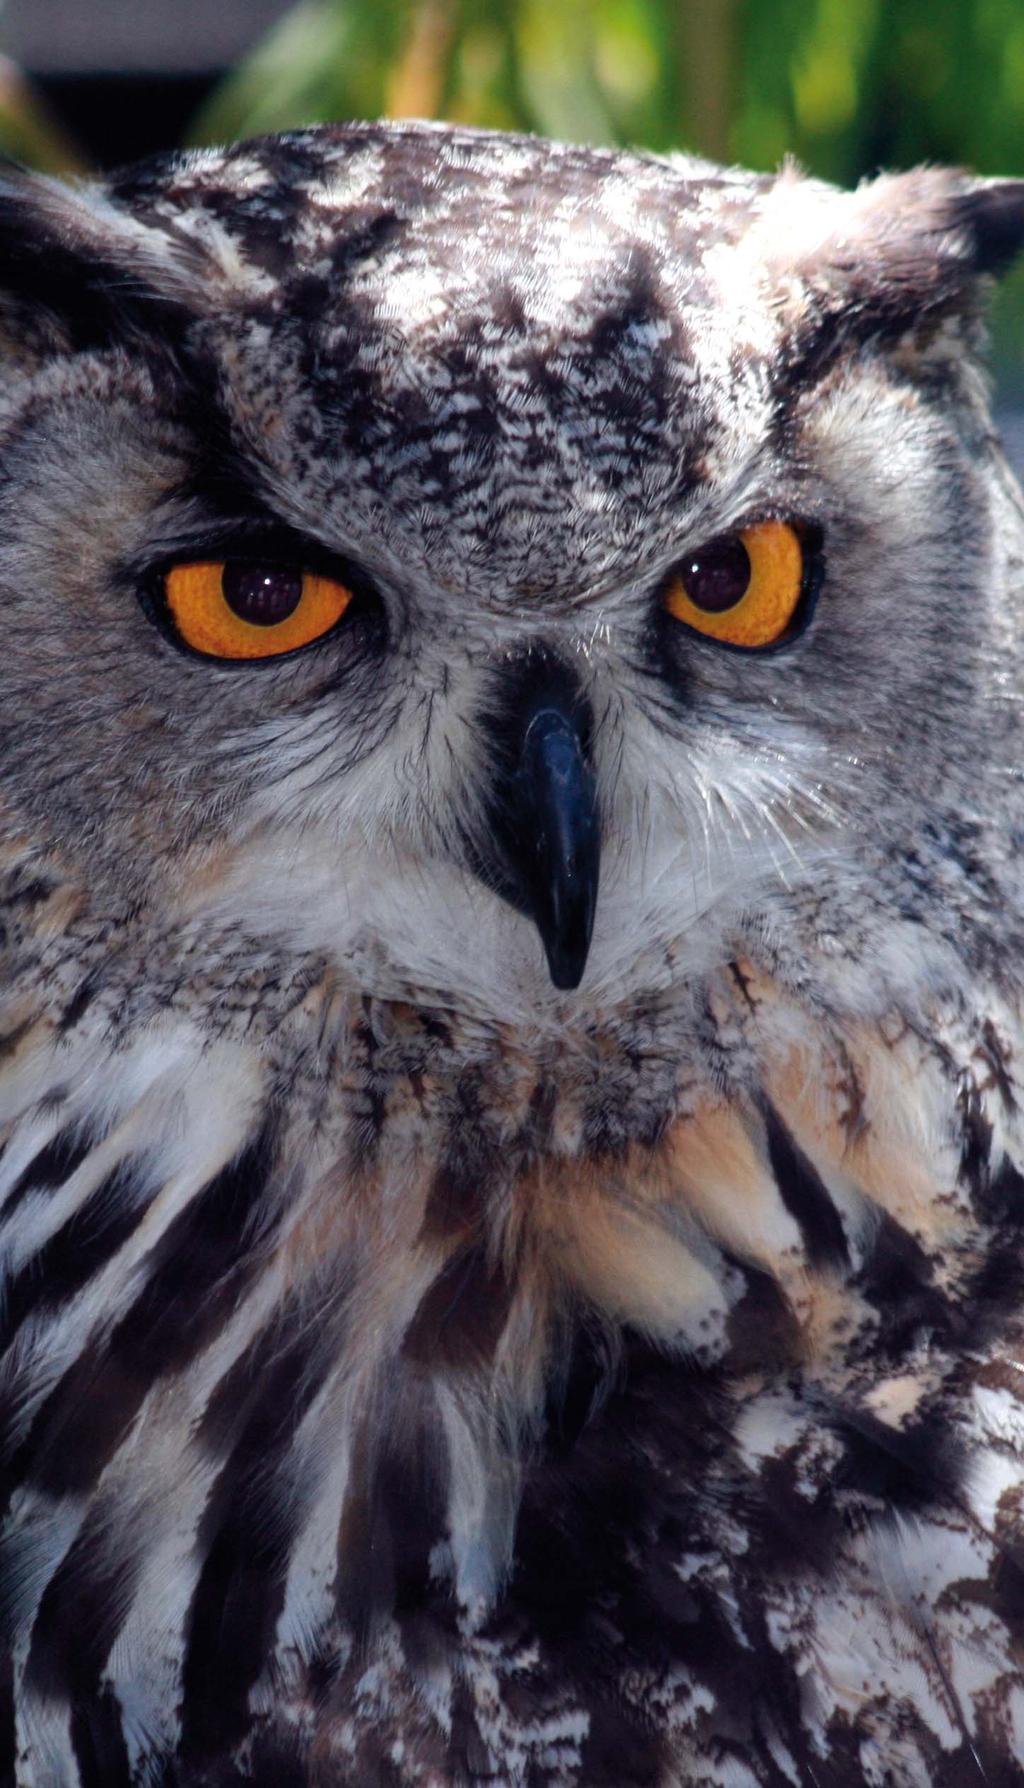 A C T II V E T O U R II S M Eagle Owl